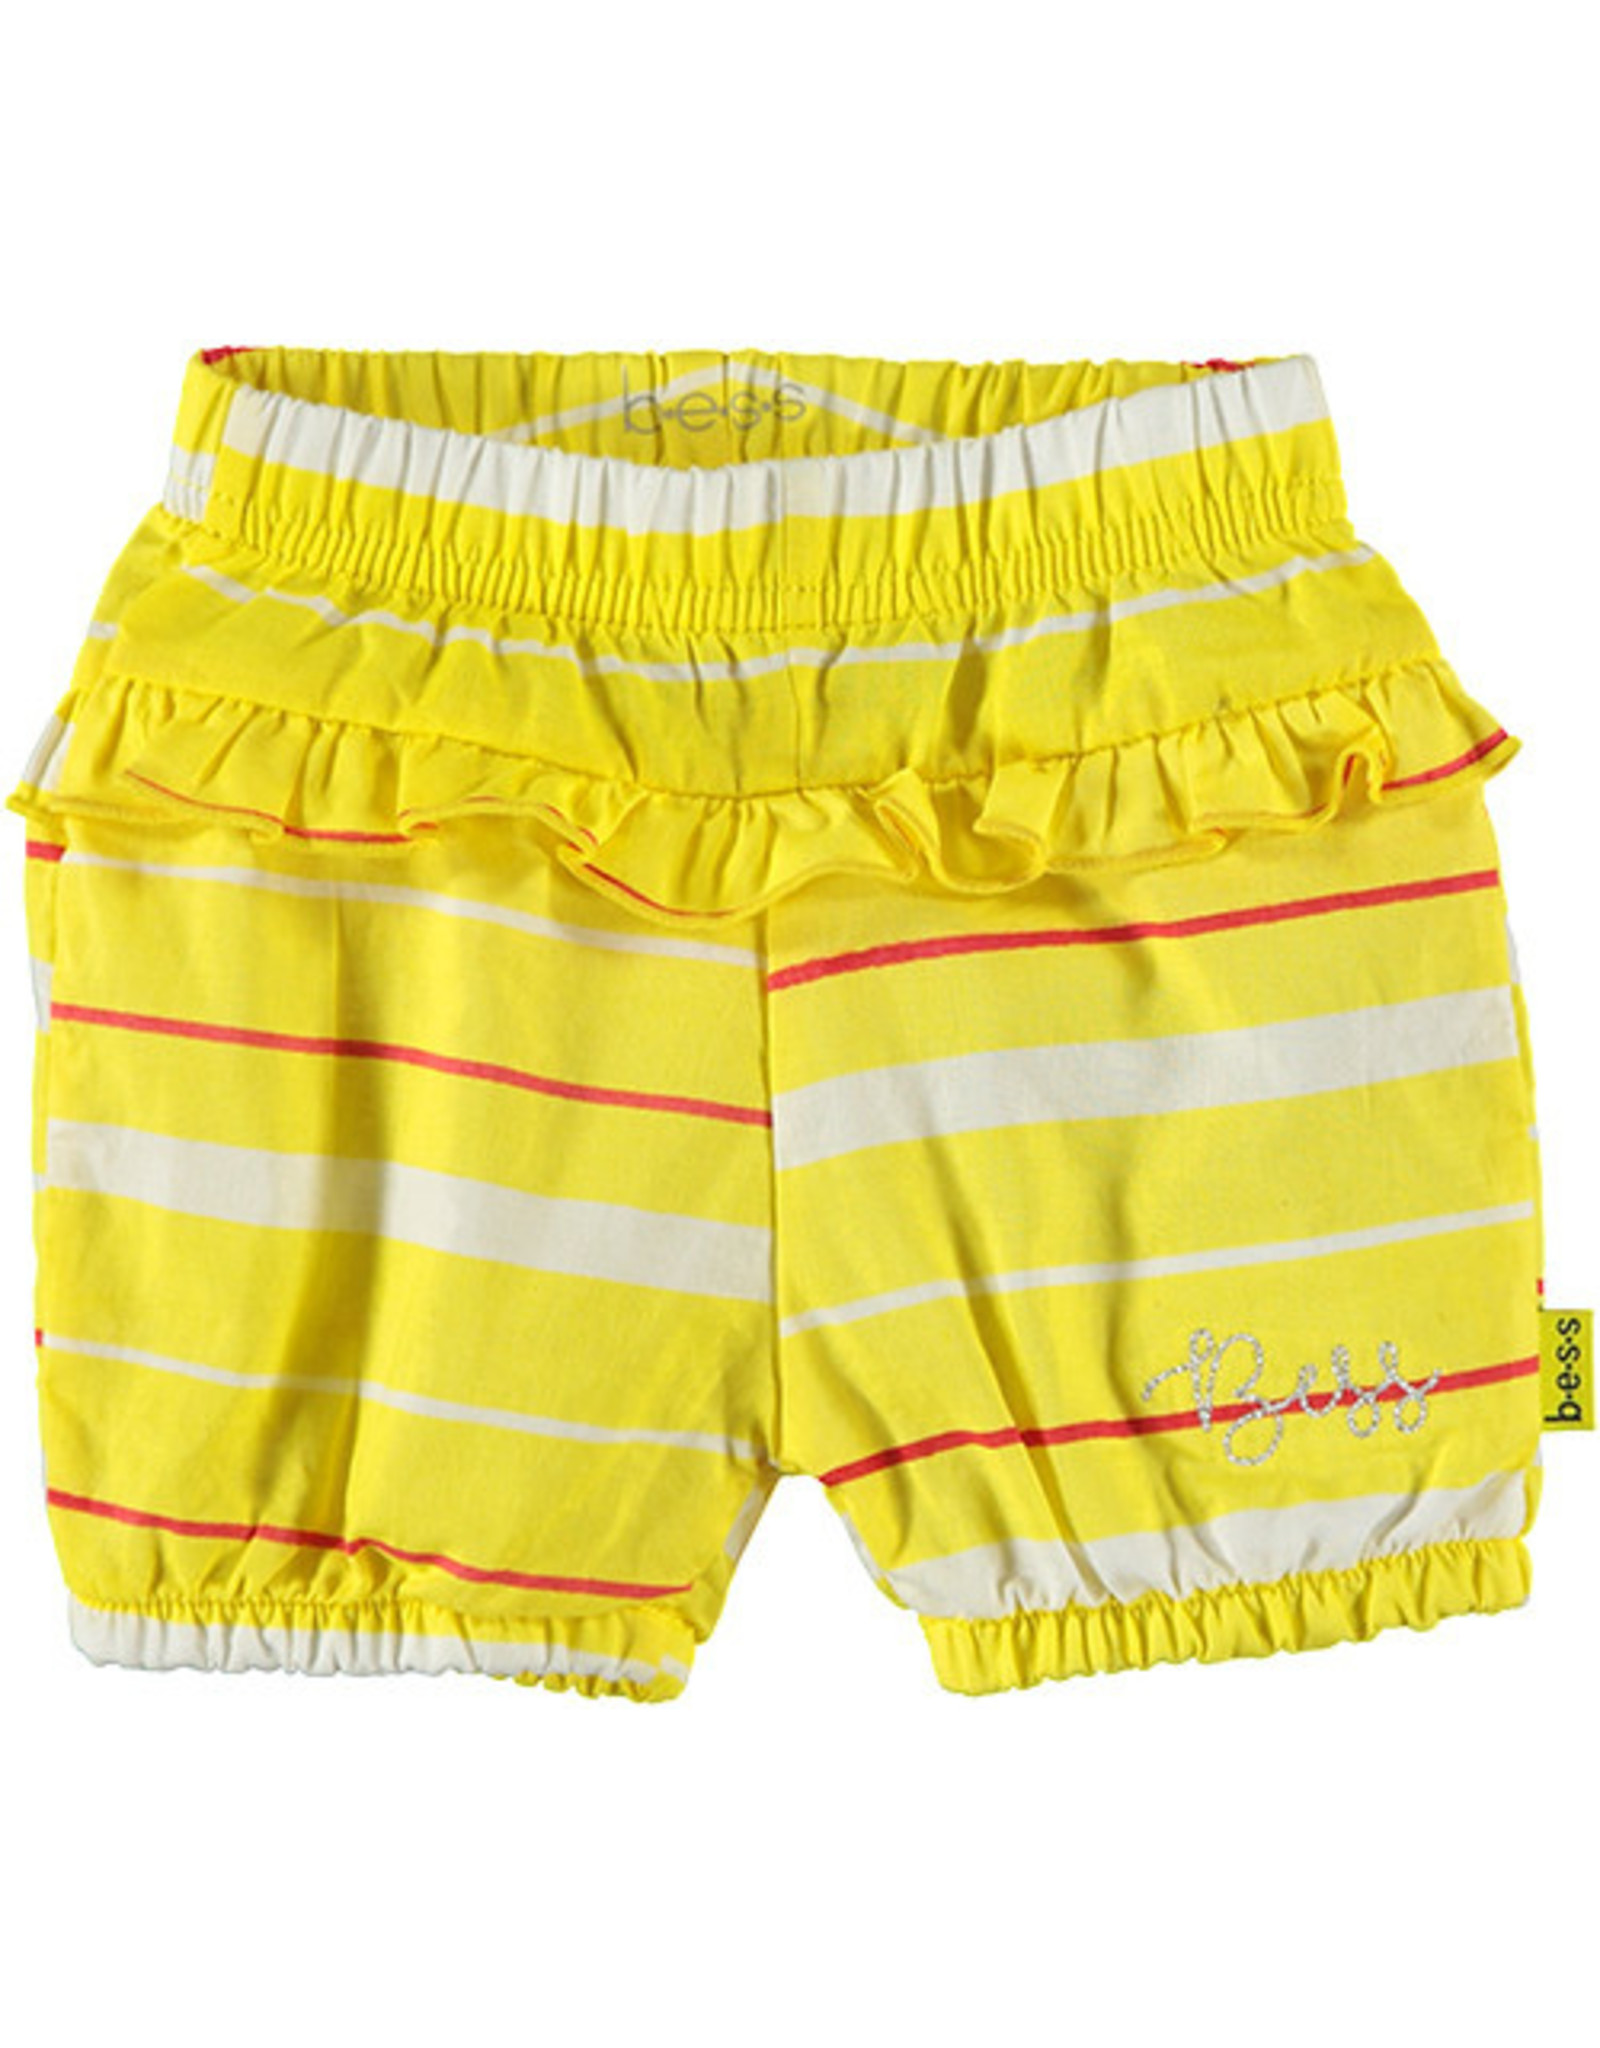 BESS Shorts Striped 10 Yellow